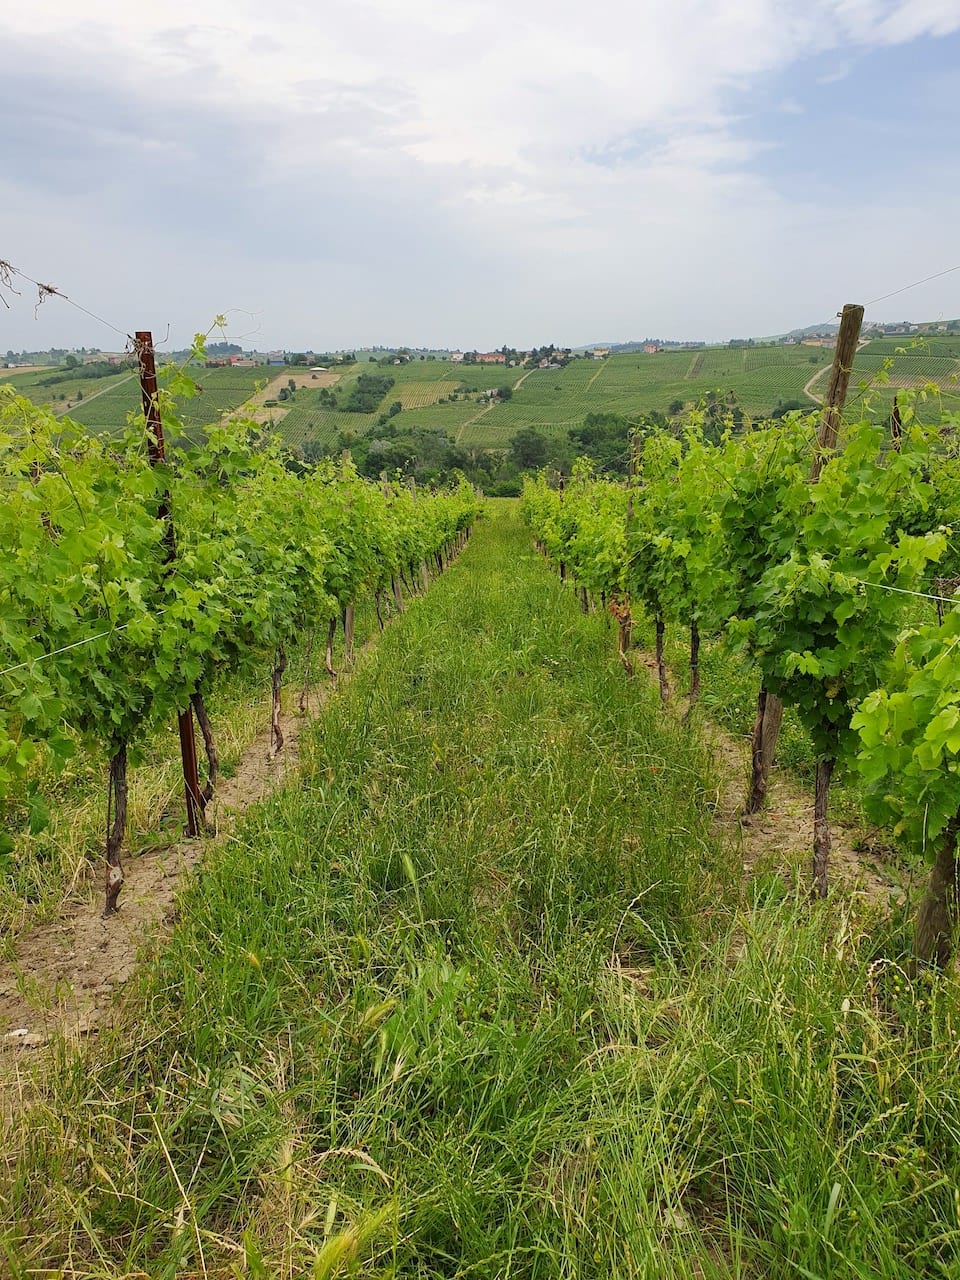 Vigne che producono vino naturale